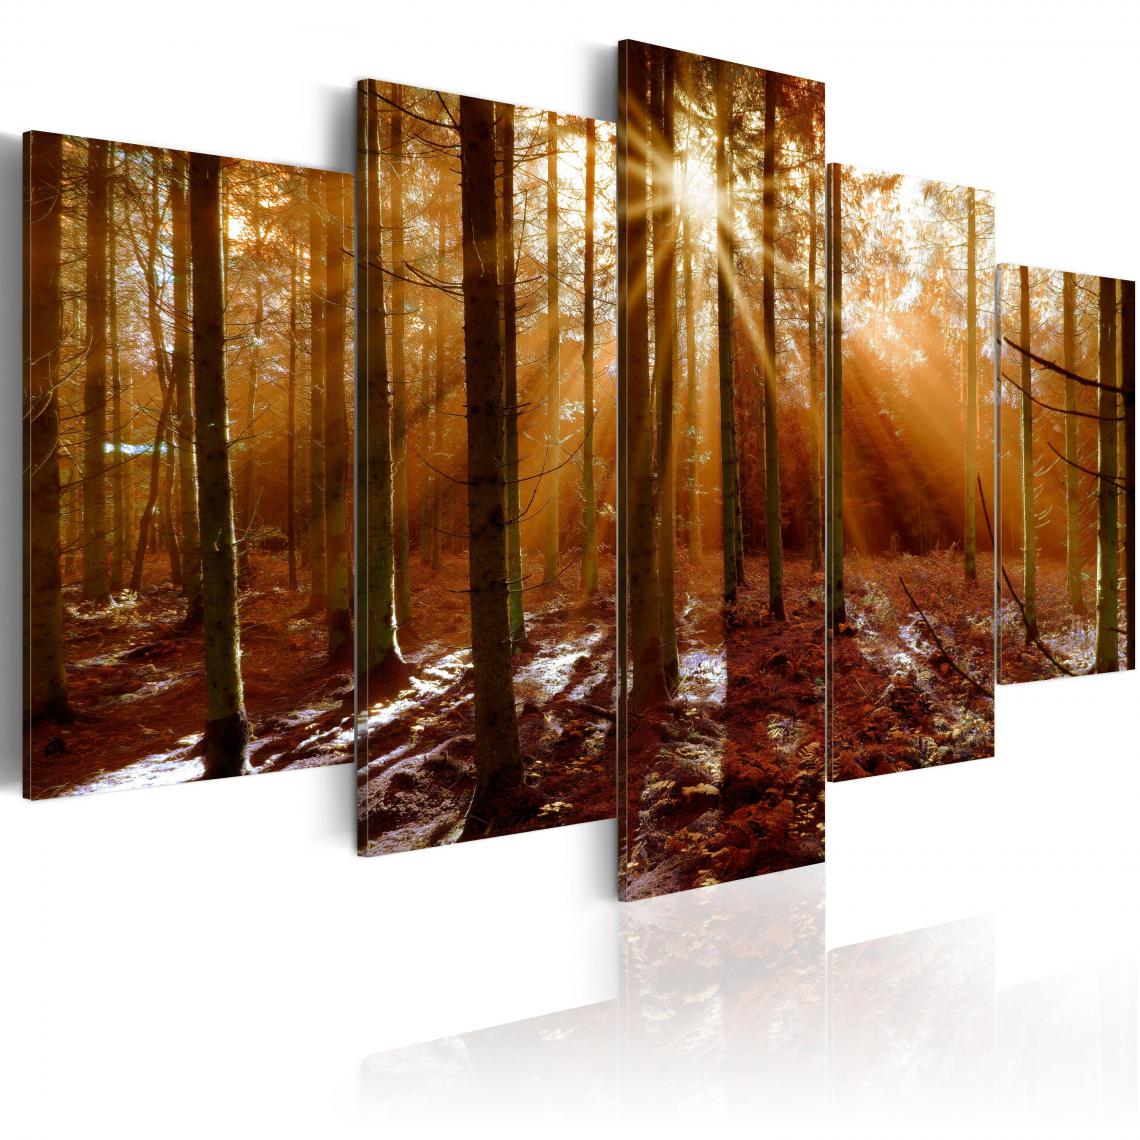 Decoshop26 - Tableau sur toile en 5 panneaux décoration murale image imprimée cadre en bois à suspendre Baiser d'automne 200x100 cm 11_0006251 - Tableaux, peintures